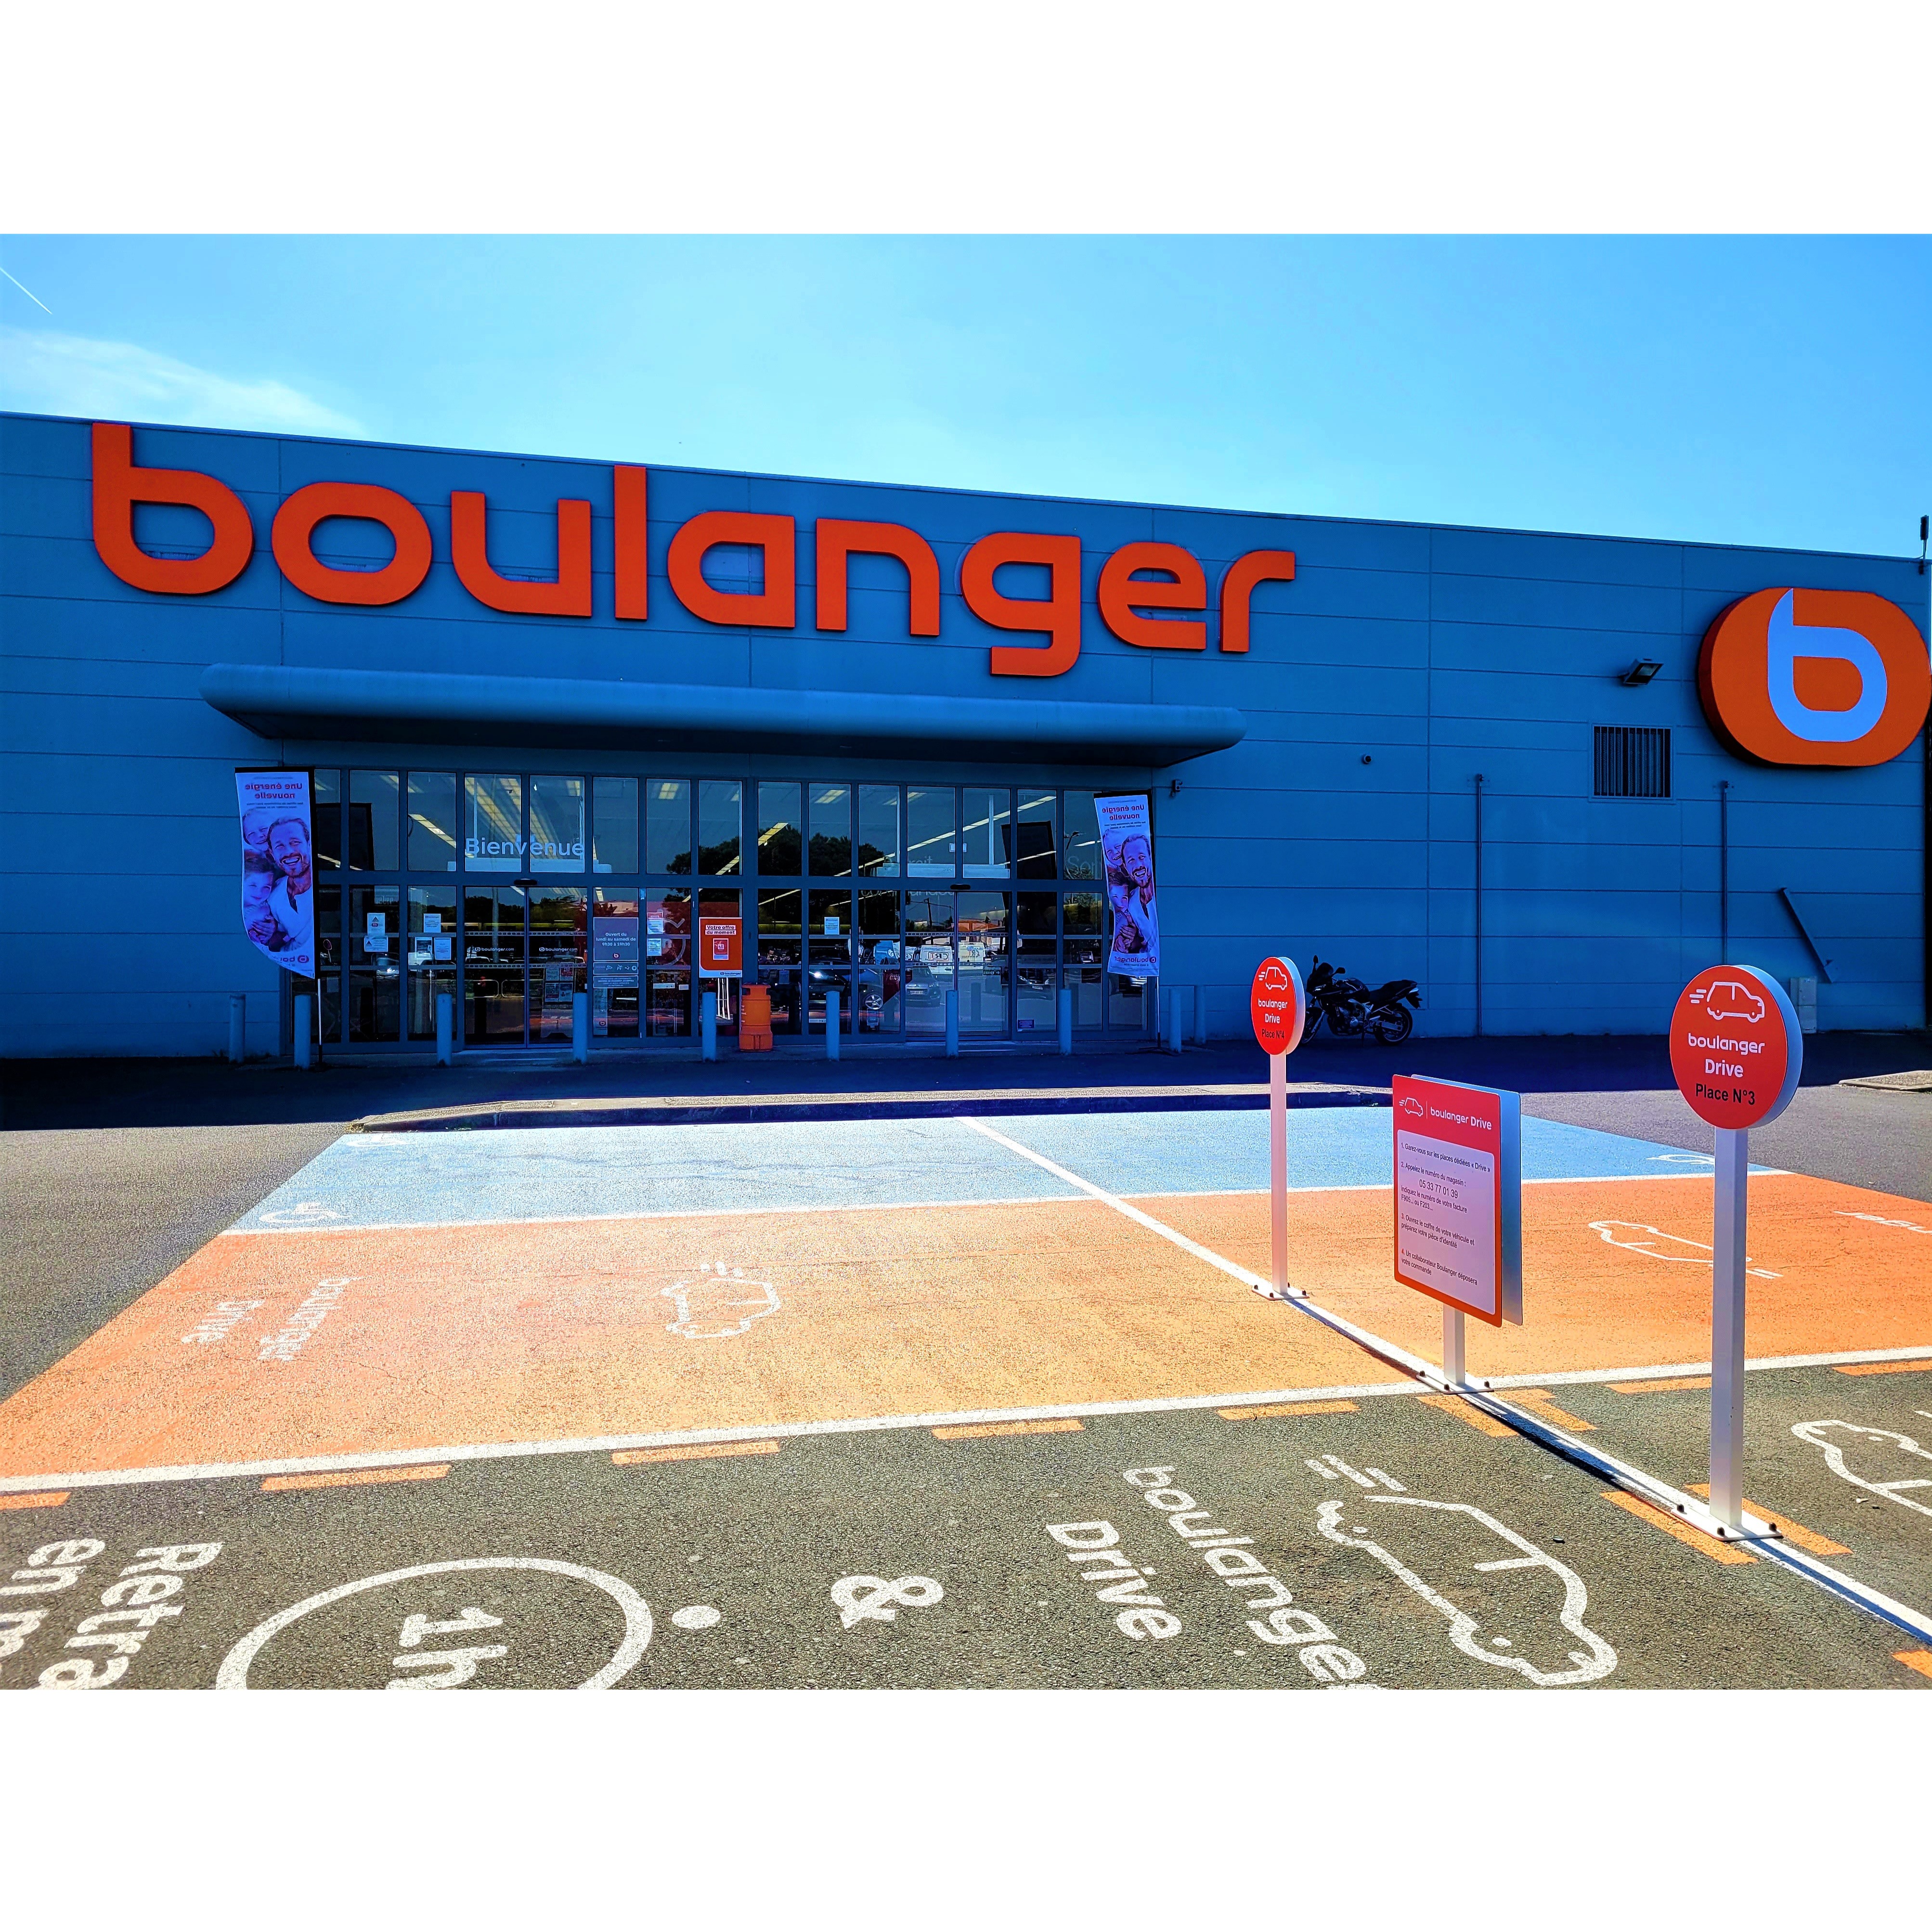 Boulanger Bordeaux - Libourne jeux vidéo (vente, location)